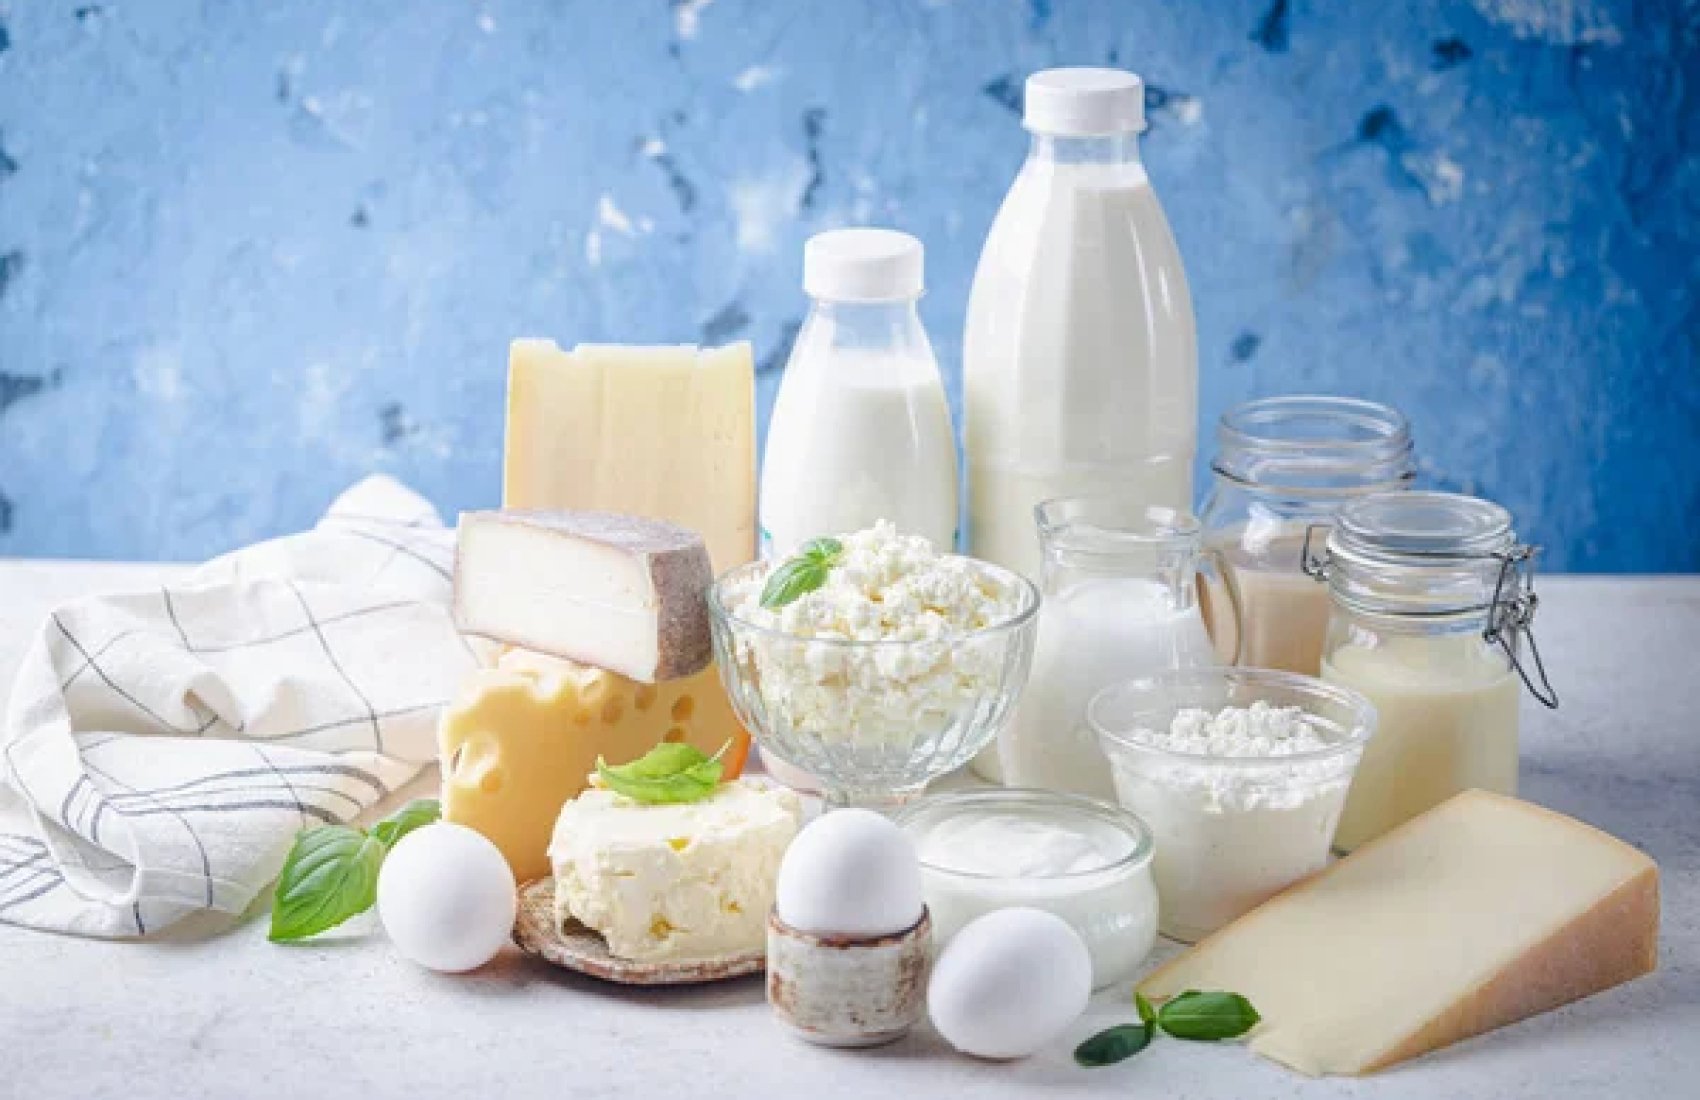 “Припинити політизацію і зайнятися бізнесом на благо України та Польщі”: виробники молочної продукції двох країн провели переговори